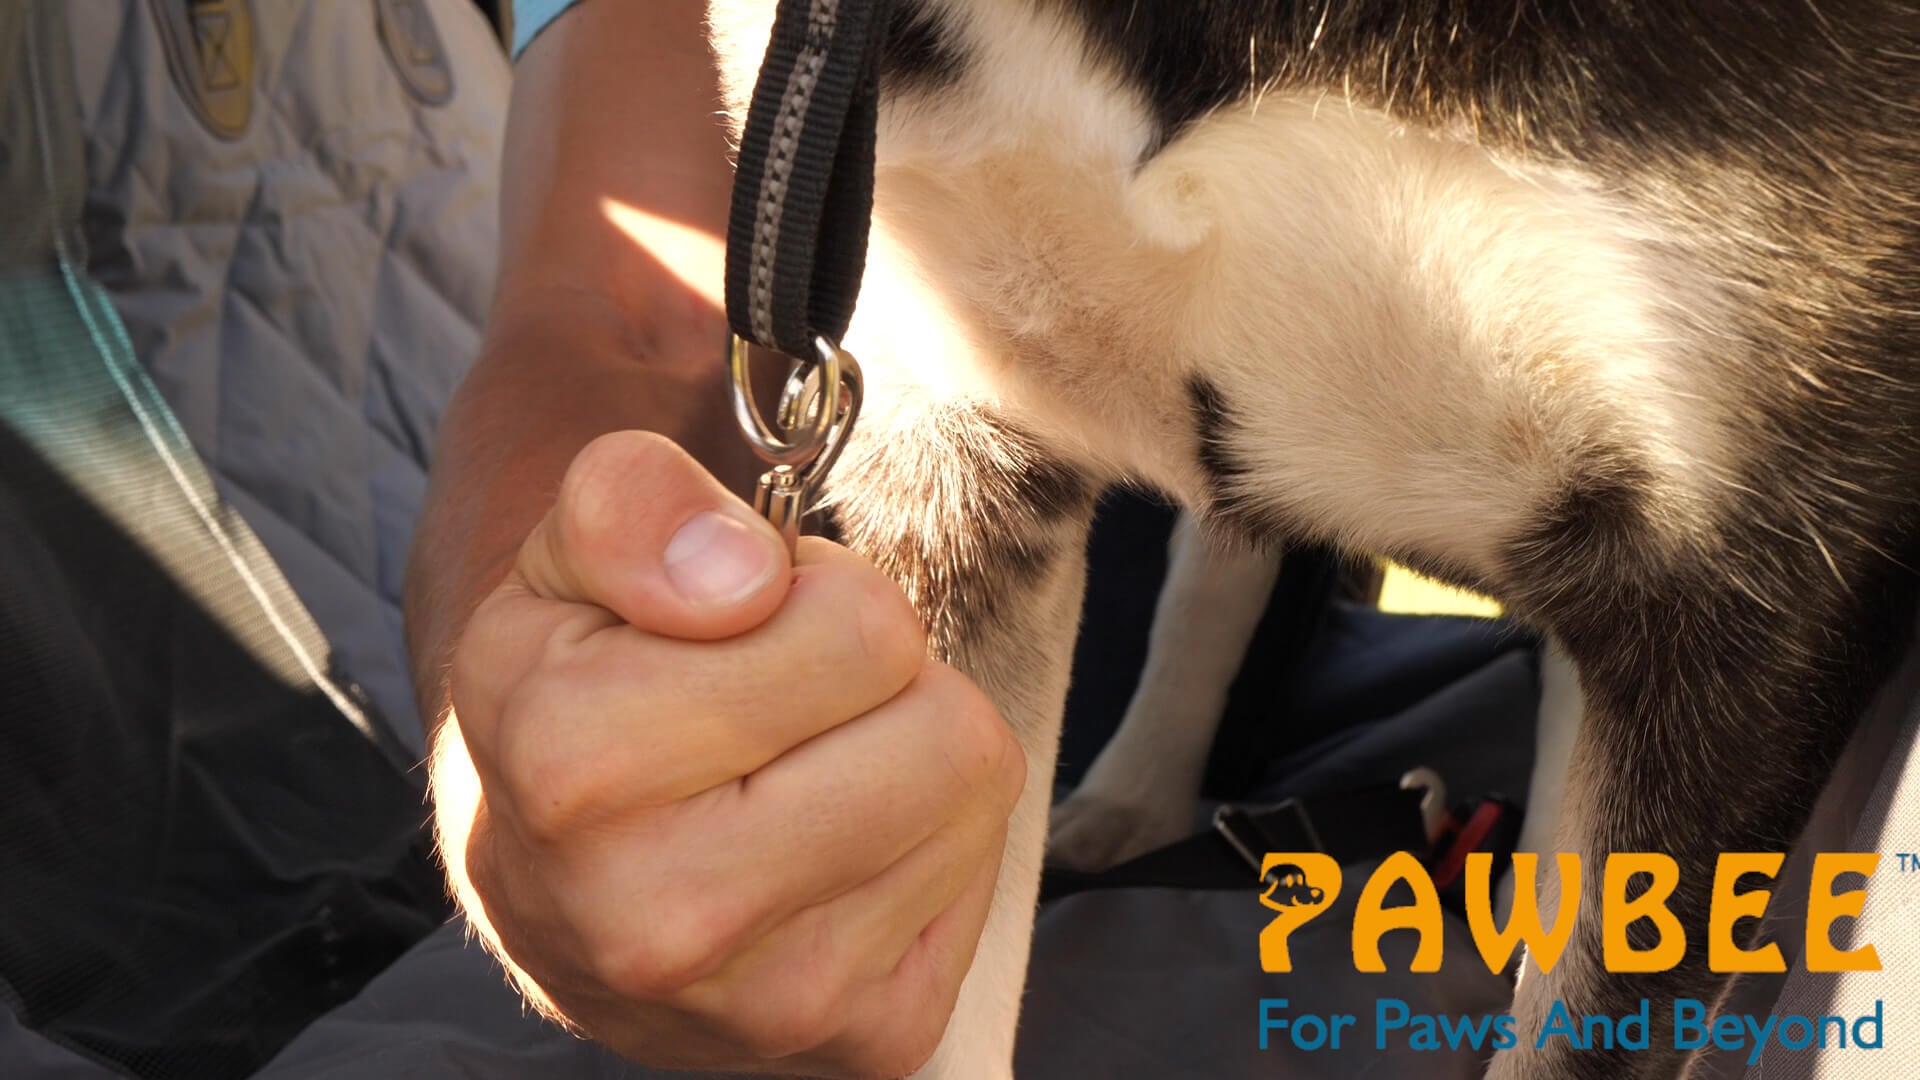 Pawbee Dog Seat Belt For Car - 2 Pack Dog Car Harness - Adjustable